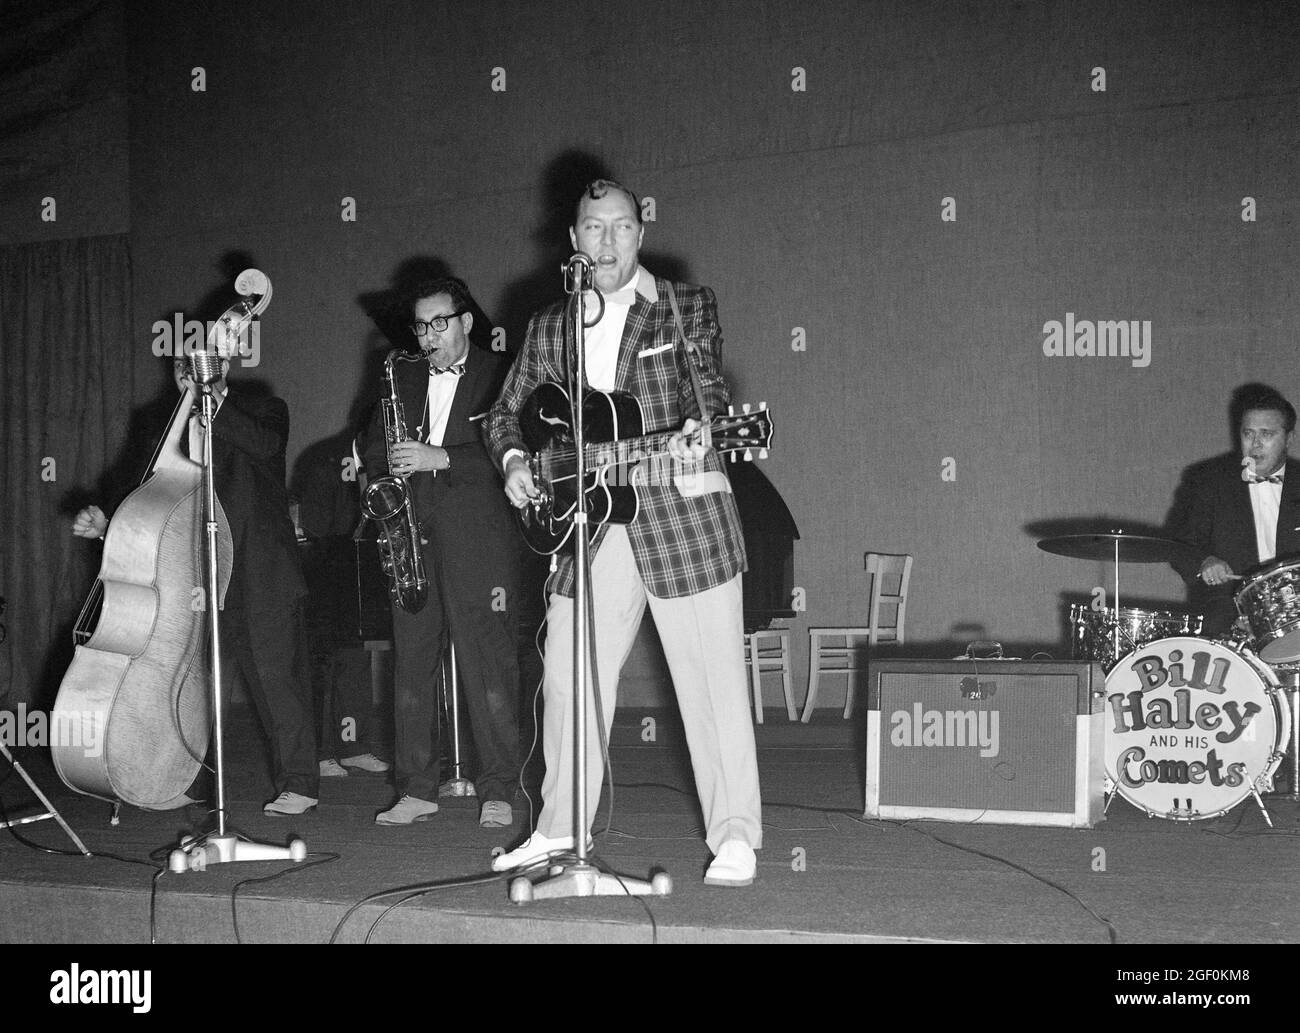 Novembre 1958, Bill Haley e le sue comete che si esibiscono sul palco, Rudy Pompilli sassophone, batterista Ralph Jones, Strasburgo, Alsazia, Francia, Europa, Foto Stock